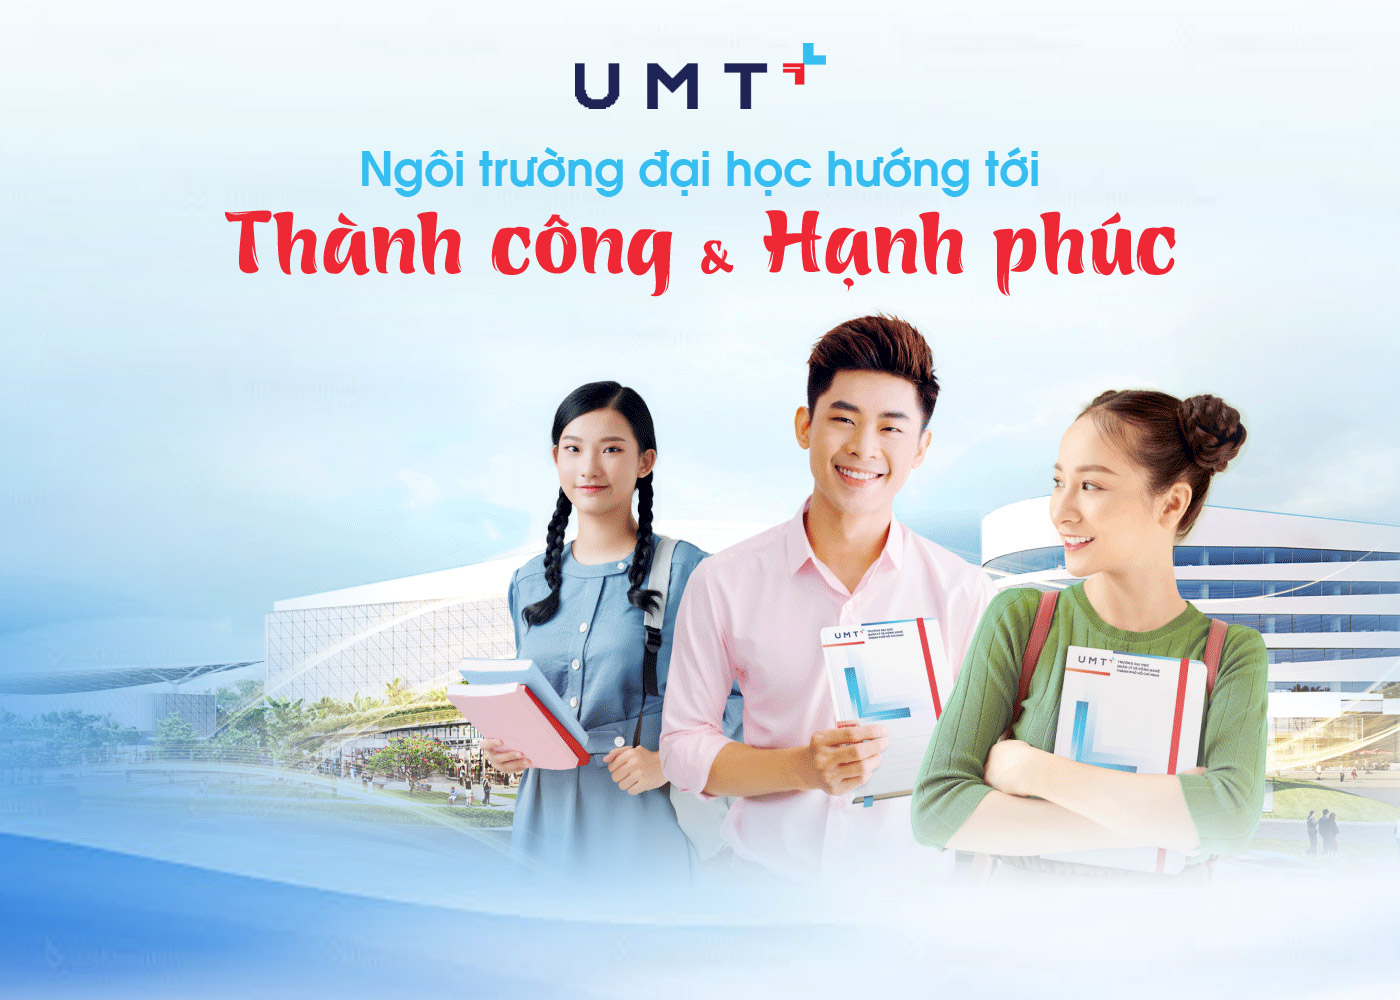 UMT - Ngôi trường đại học hướng tới thành công và hạnh phúc - Ảnh 1